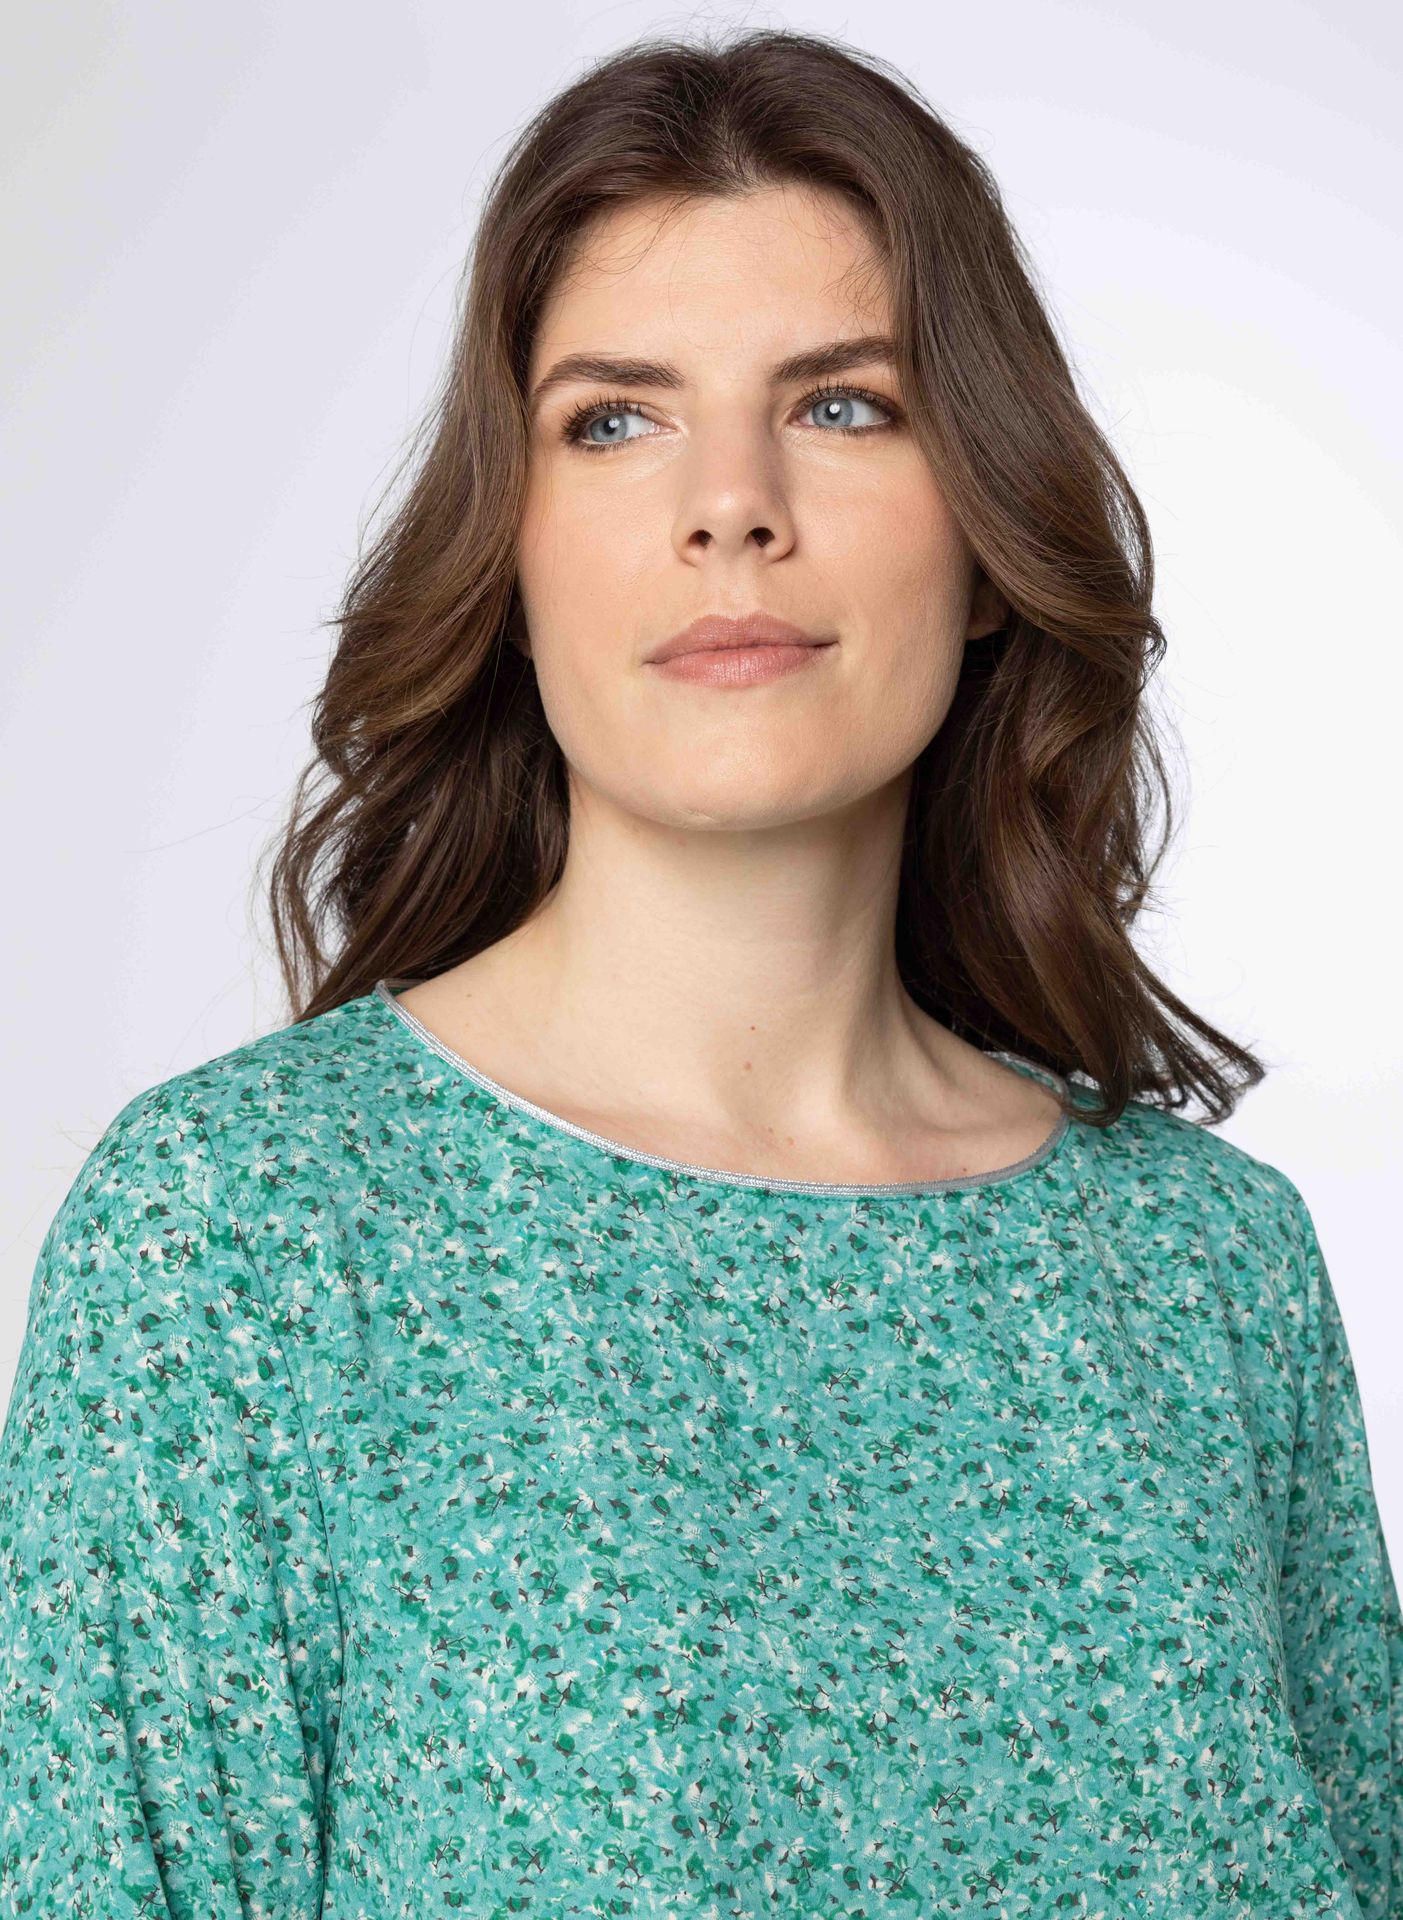 Norah Groene blouse met pofmouwen sea green multicolor 211244-576